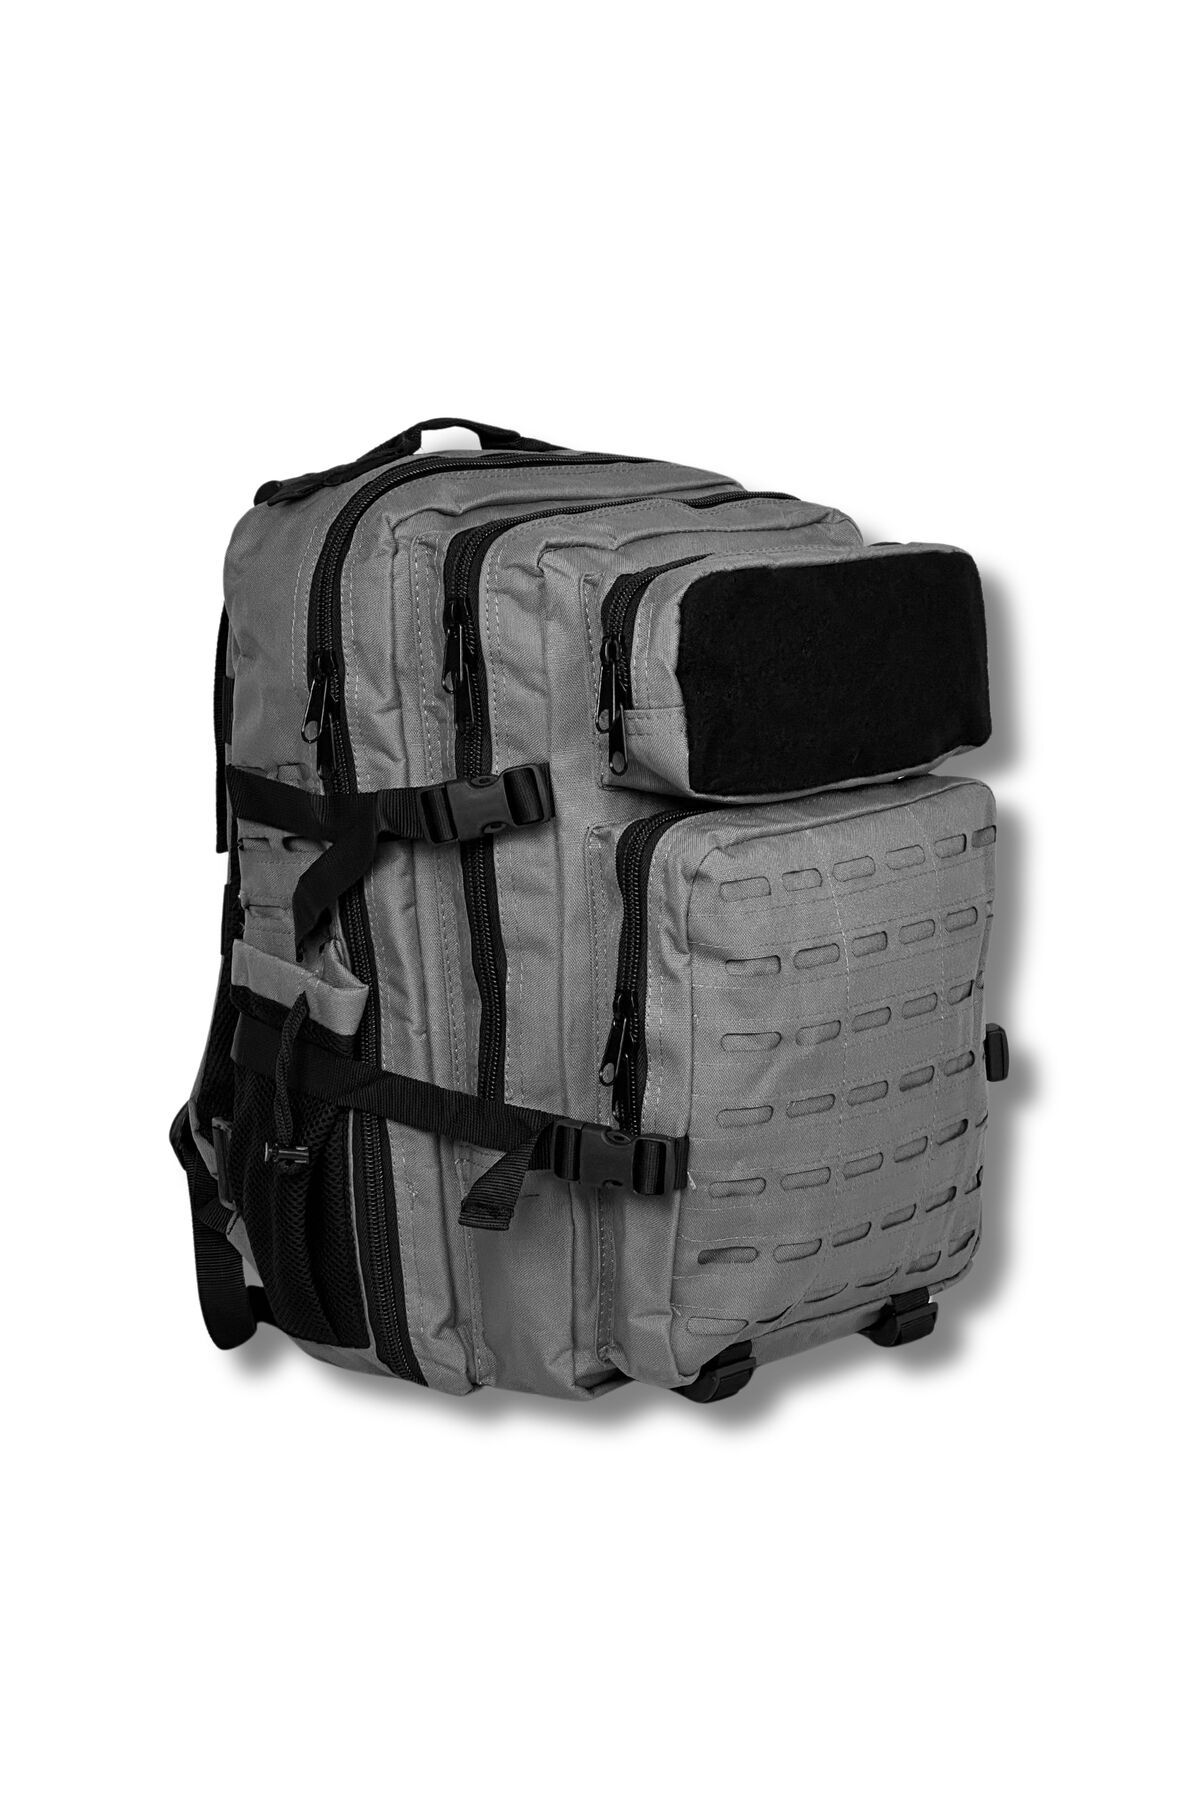 Wolftrap Tactical Taktik sırt çantası (çok amaçlı seyahat çantası)